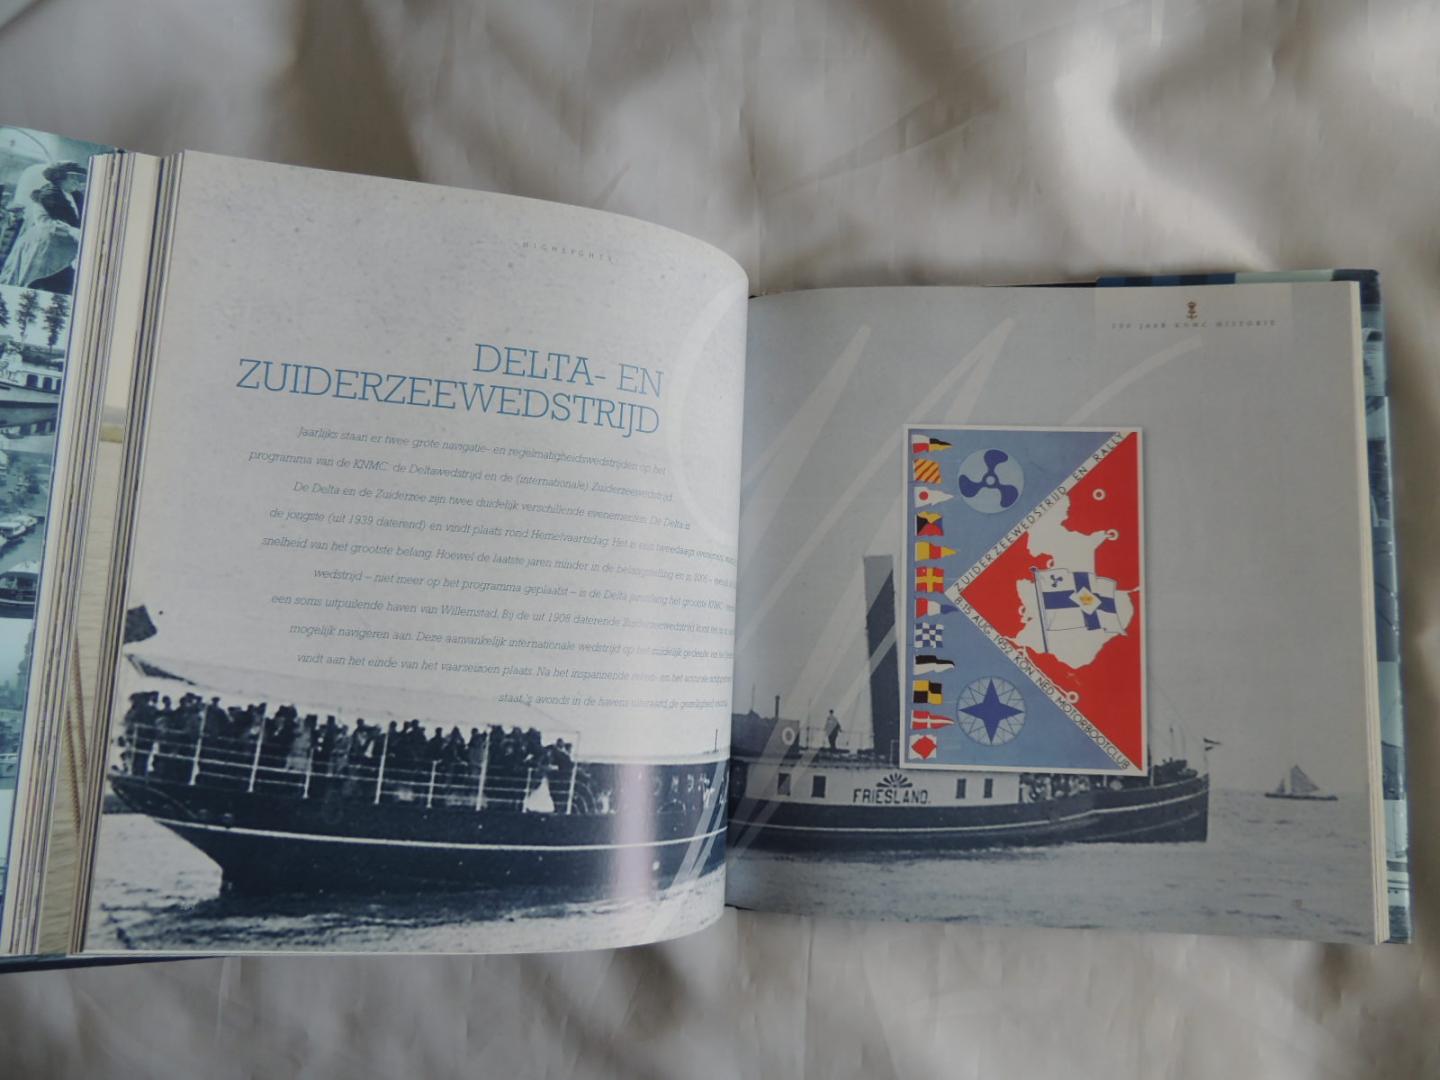 Onvlee, Peter - 100 jaar KNMC 1907-2007. Inclusief 2 losse kaarten. Koninlijke Nederlandse Motorboot Club